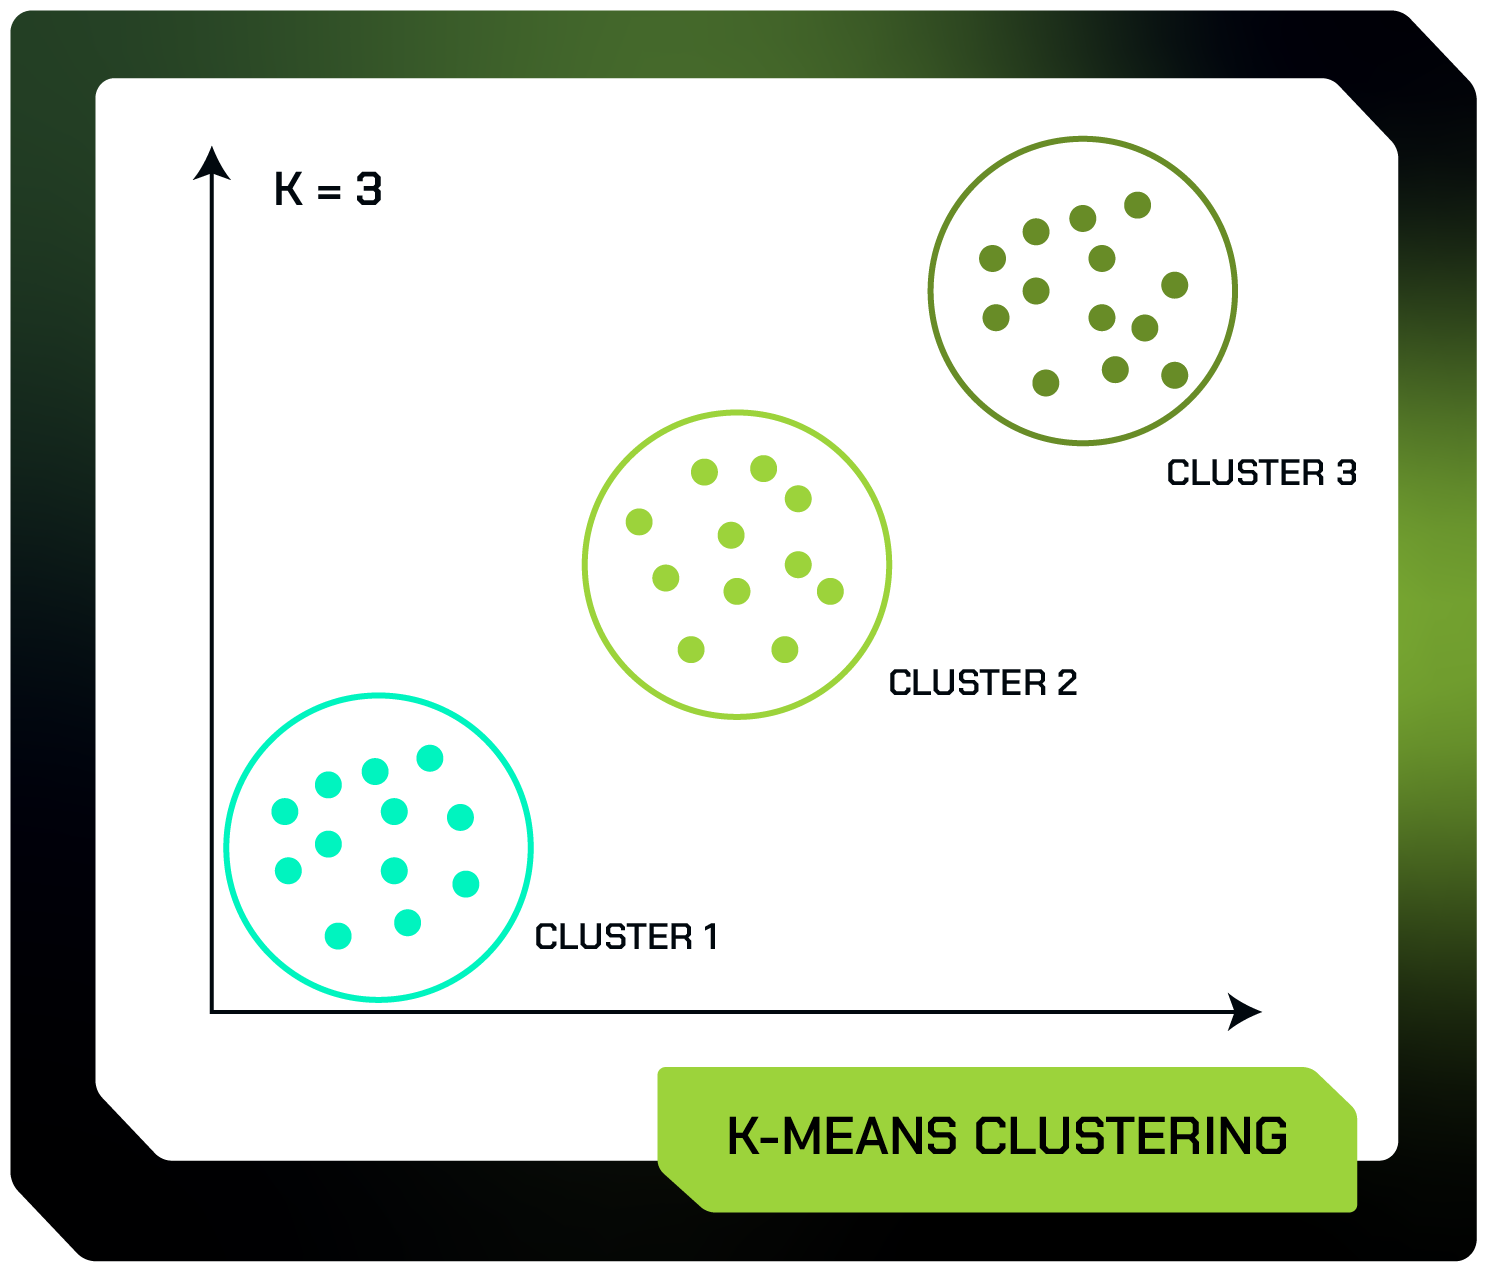 Alt text: Imagem que mostra um gráfico com o título “K-MEANS CLUSTERING”. Não existem valores nos eixos X e Y. O gráfico é composto por três agrupamentos de pontos. O primeiro agrupamento se localiza no canto inferior esquerdo, tem vários pontos na cor ciano e estão circulados por um círculo com o título “CLUSTER 1”. O segundo se localiza no centro do gráfico, tem vários pontos na cor verde claro e estão circulados por um círculo com o título “CLUSTER 2”. E o terceiro agrupamento se localiza no canto superior direito, tem vários pontos na cor verde escura e estão circulados por um círculo com o título “CLUSTER 3”. Acima do gráfico tem o texto “K = 3”.